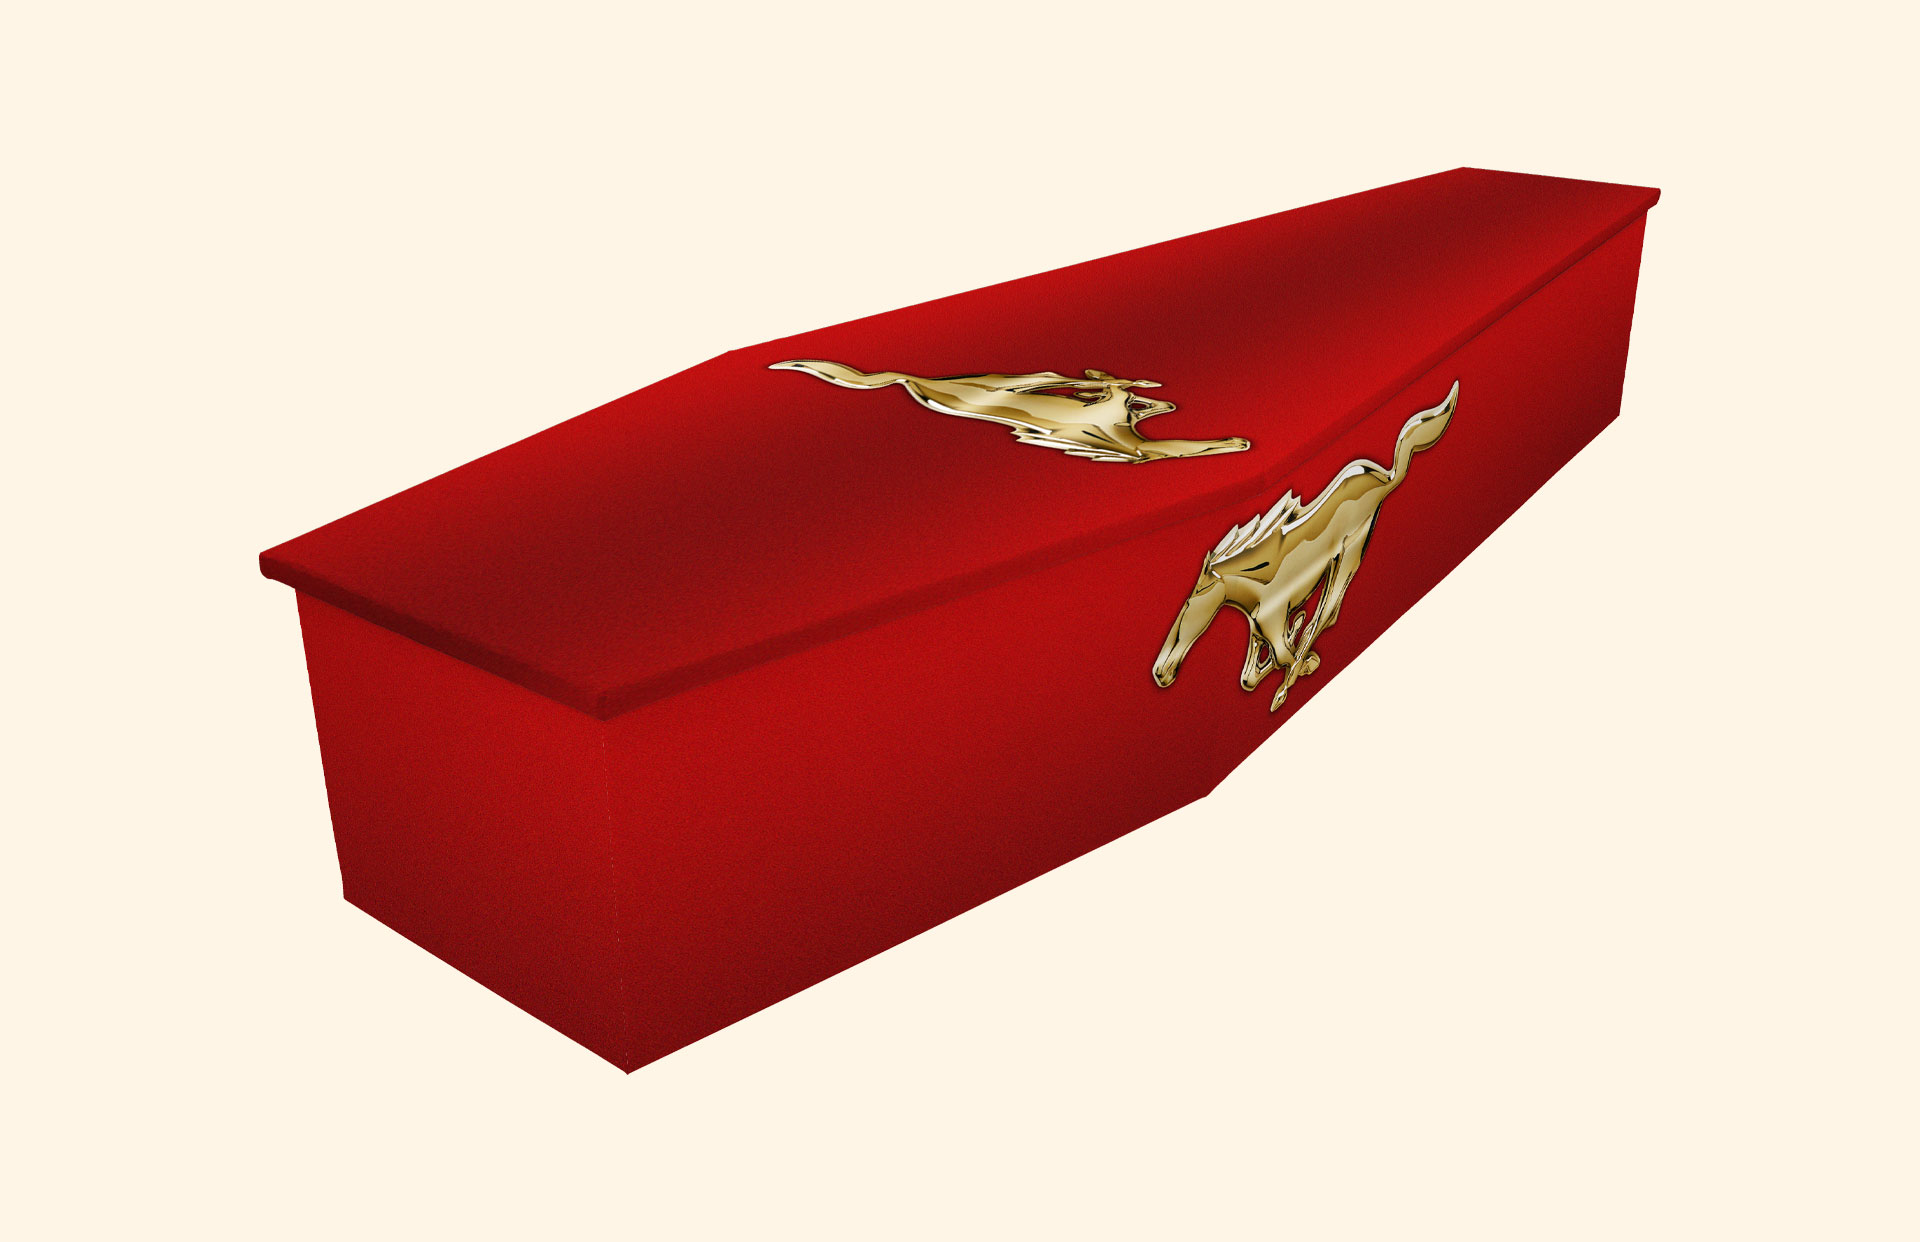 Golden Stallion design on a cardboard coffin